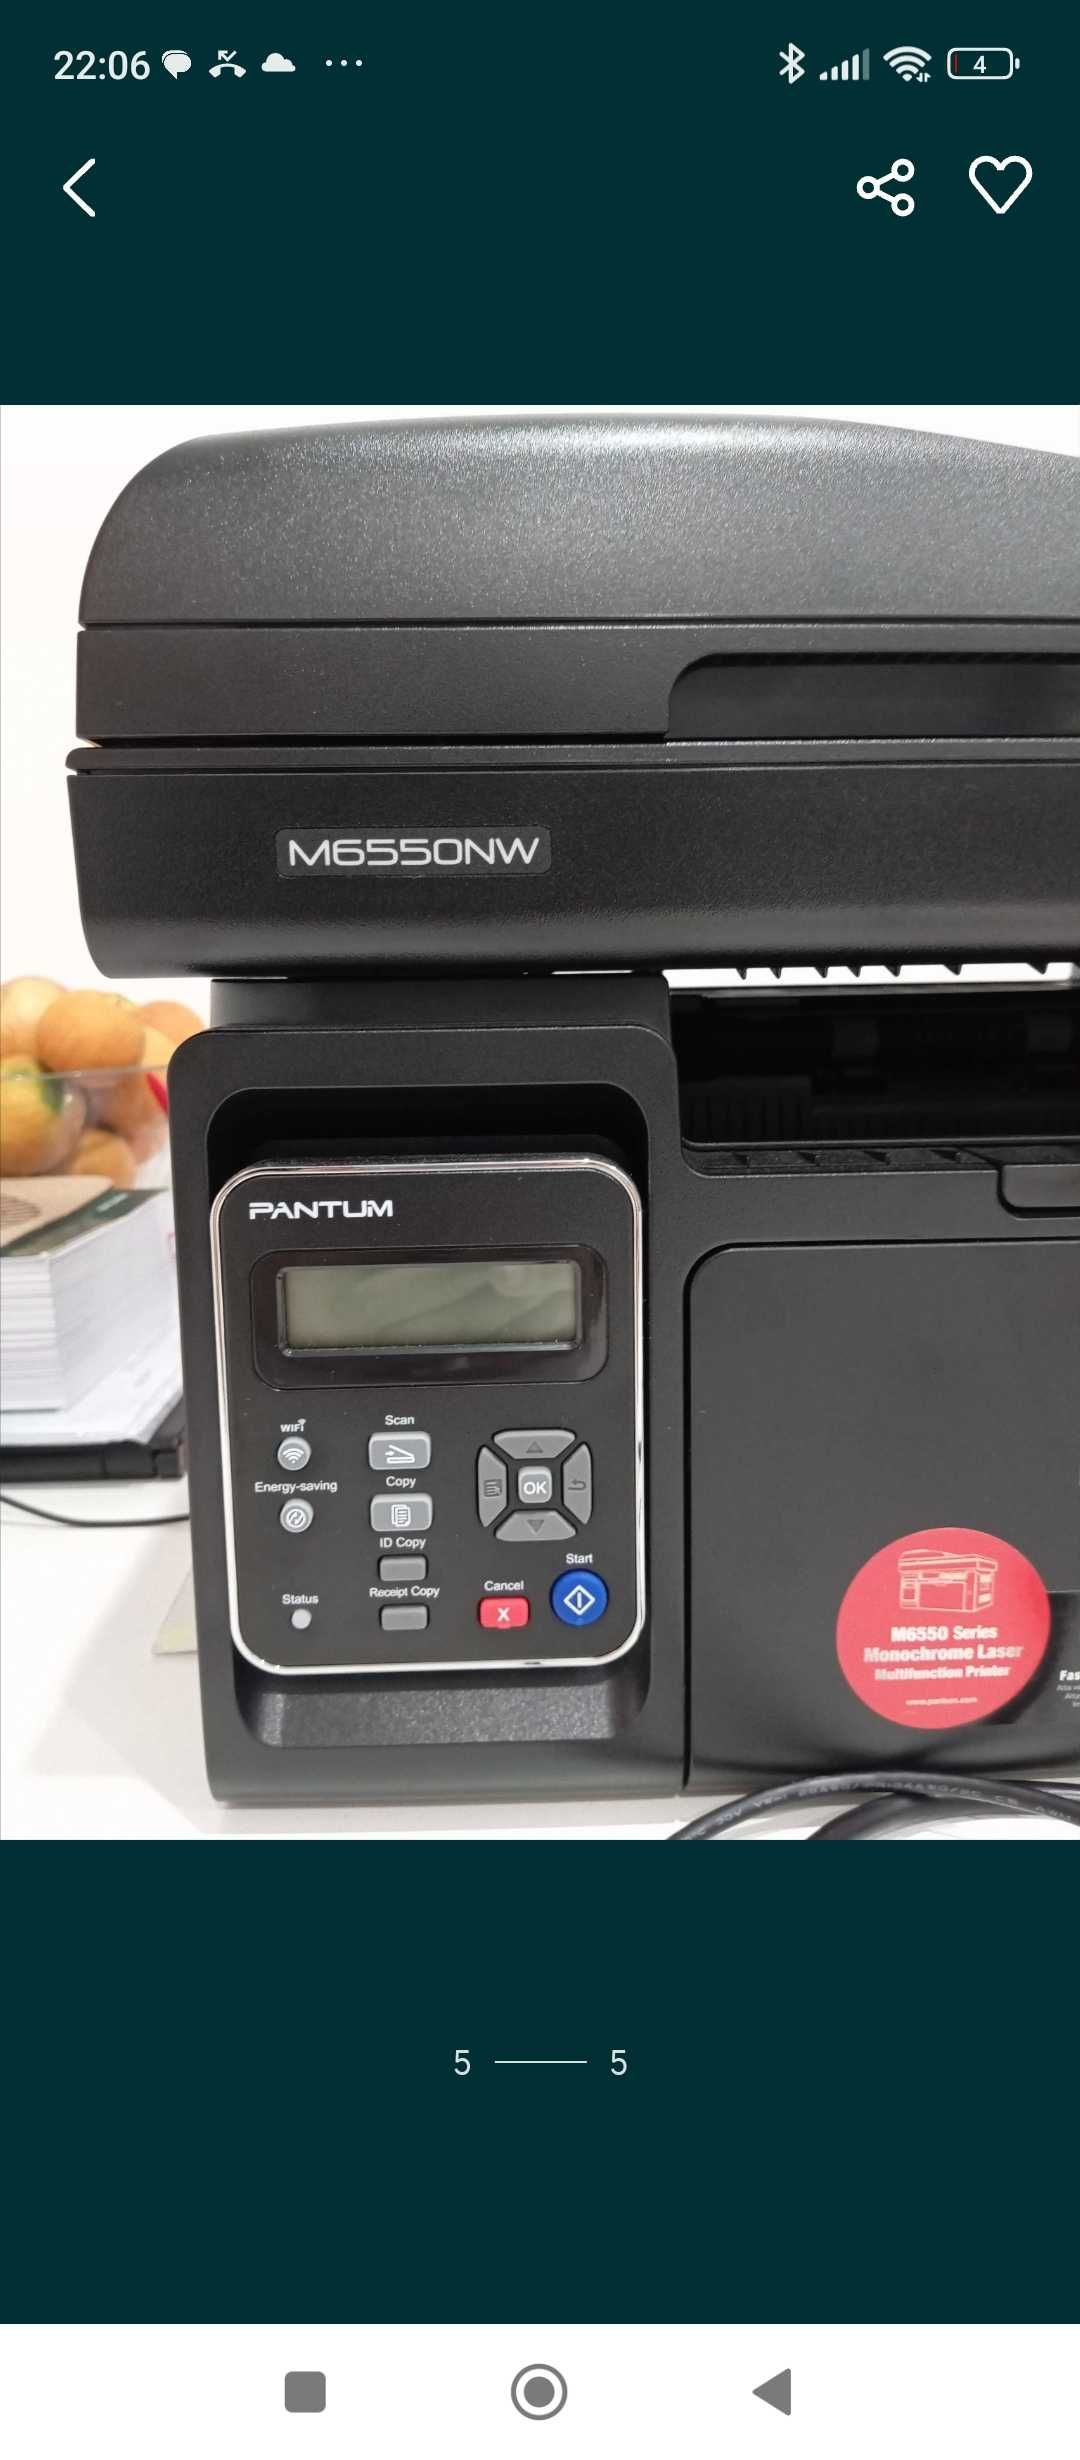 Impressora e digitalizadora multifunções como nova PANTUM  M6550NW